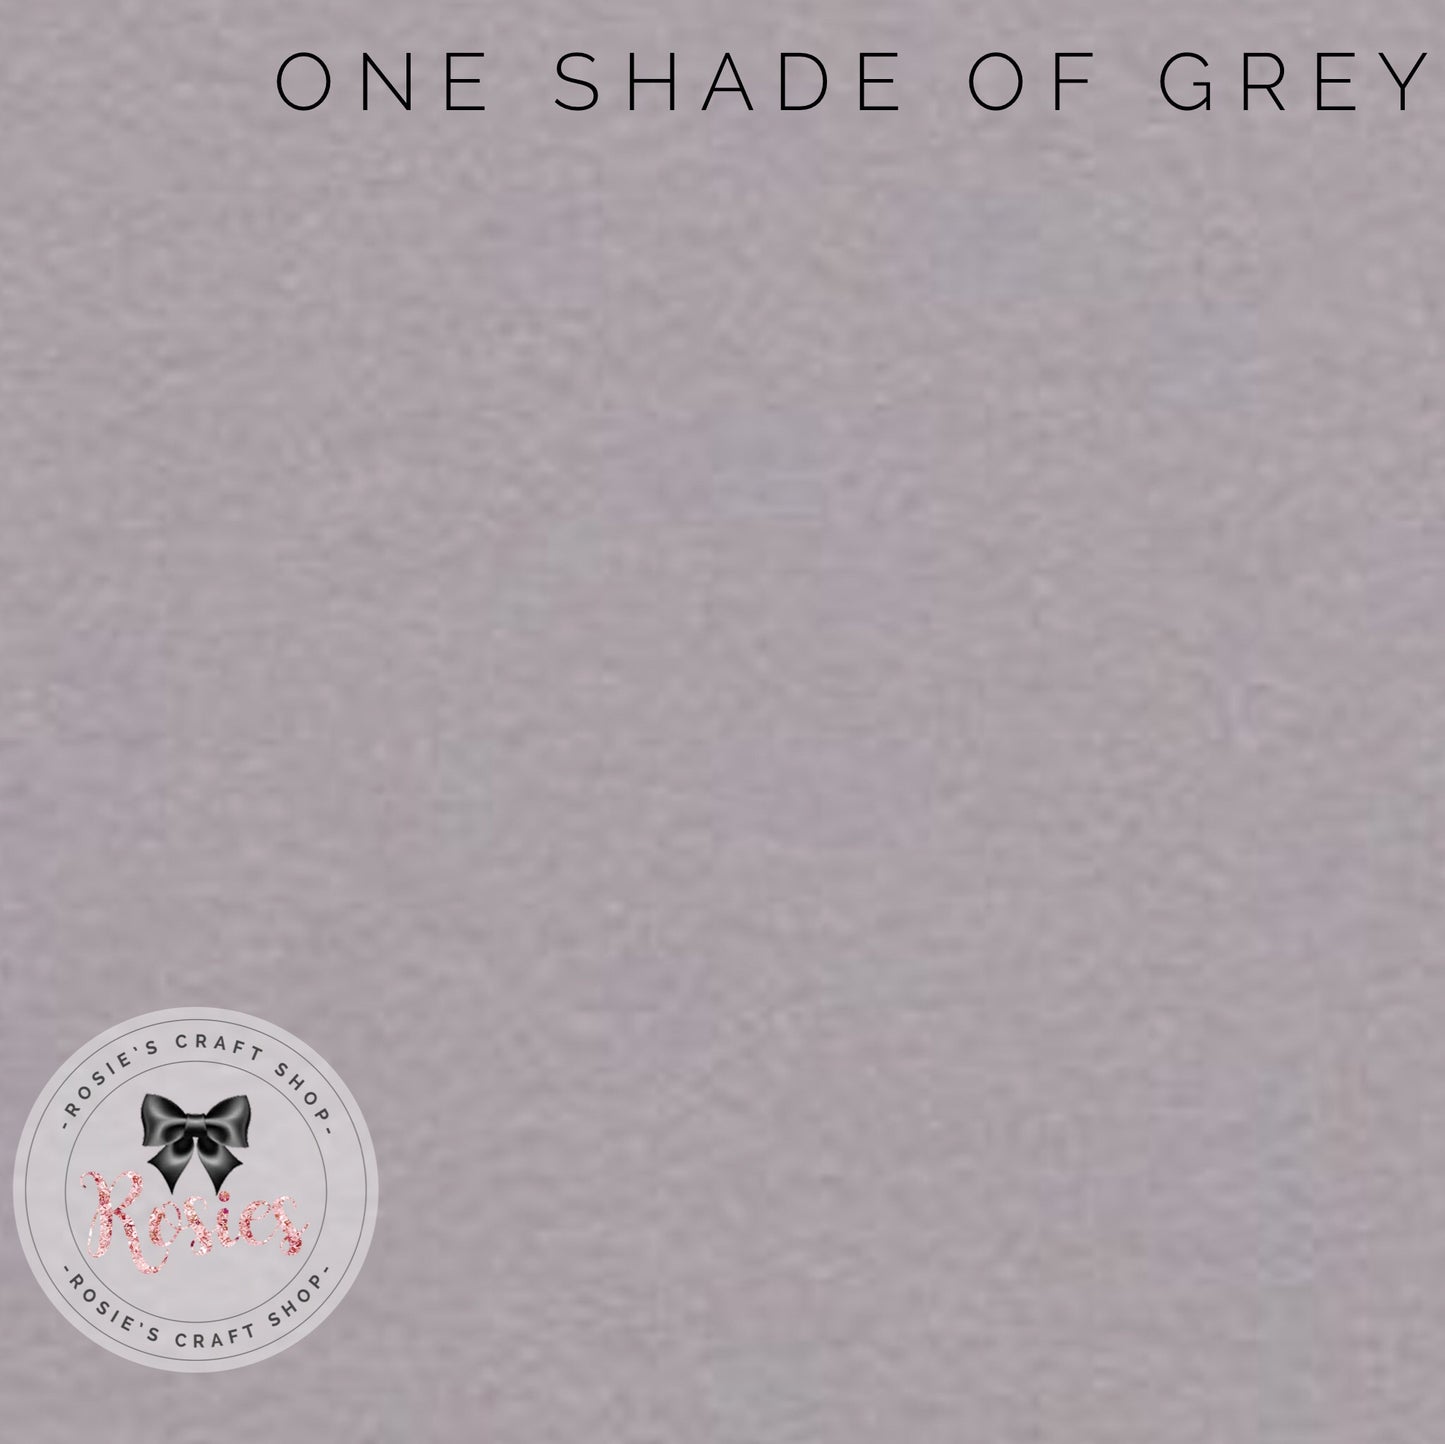 One Shade Of Grey Wool Blend Felt - Rosie's Craft Shop Ltd